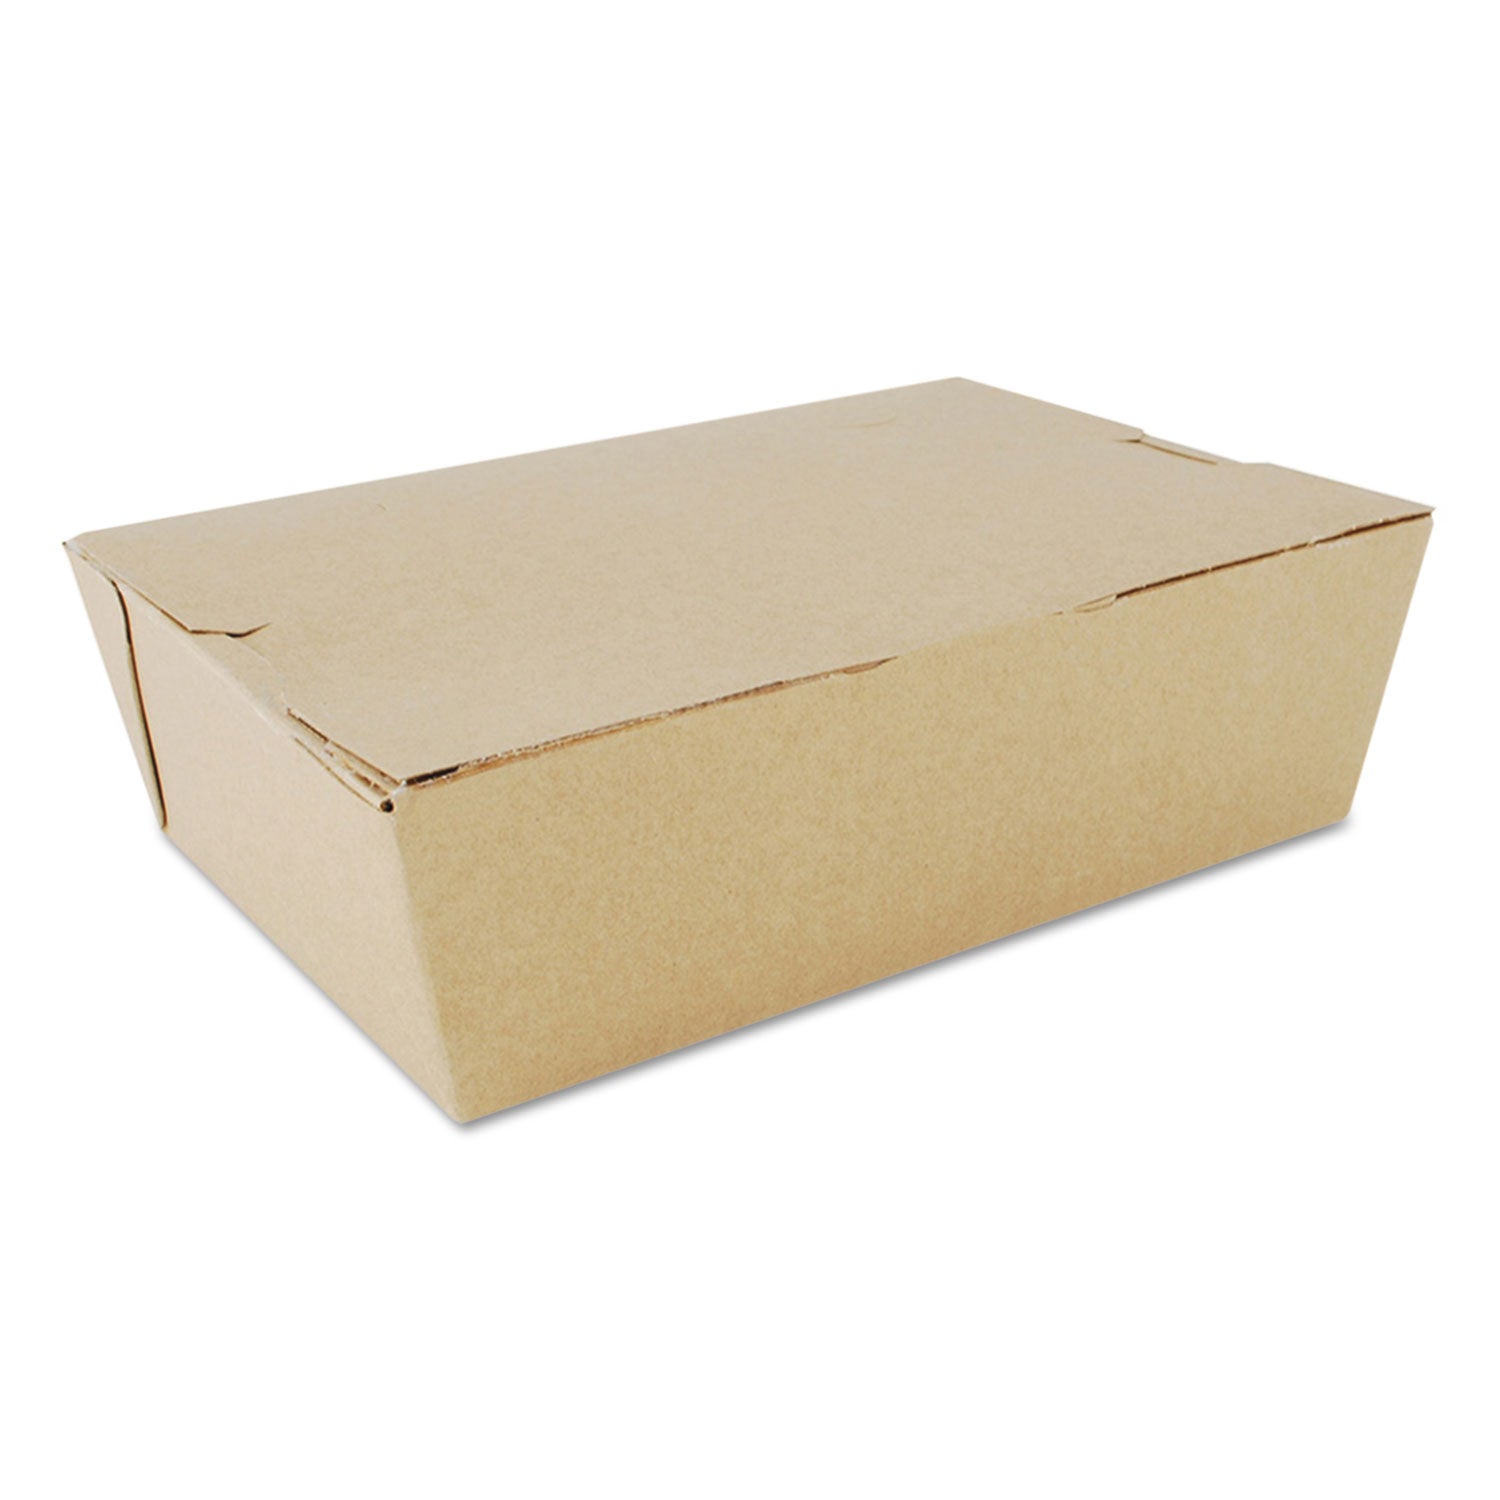 ChampPak Carryout Boxes, #3, 7.75 x 5.5 x 2.5, Kraft, Paper, 200/Carton - 